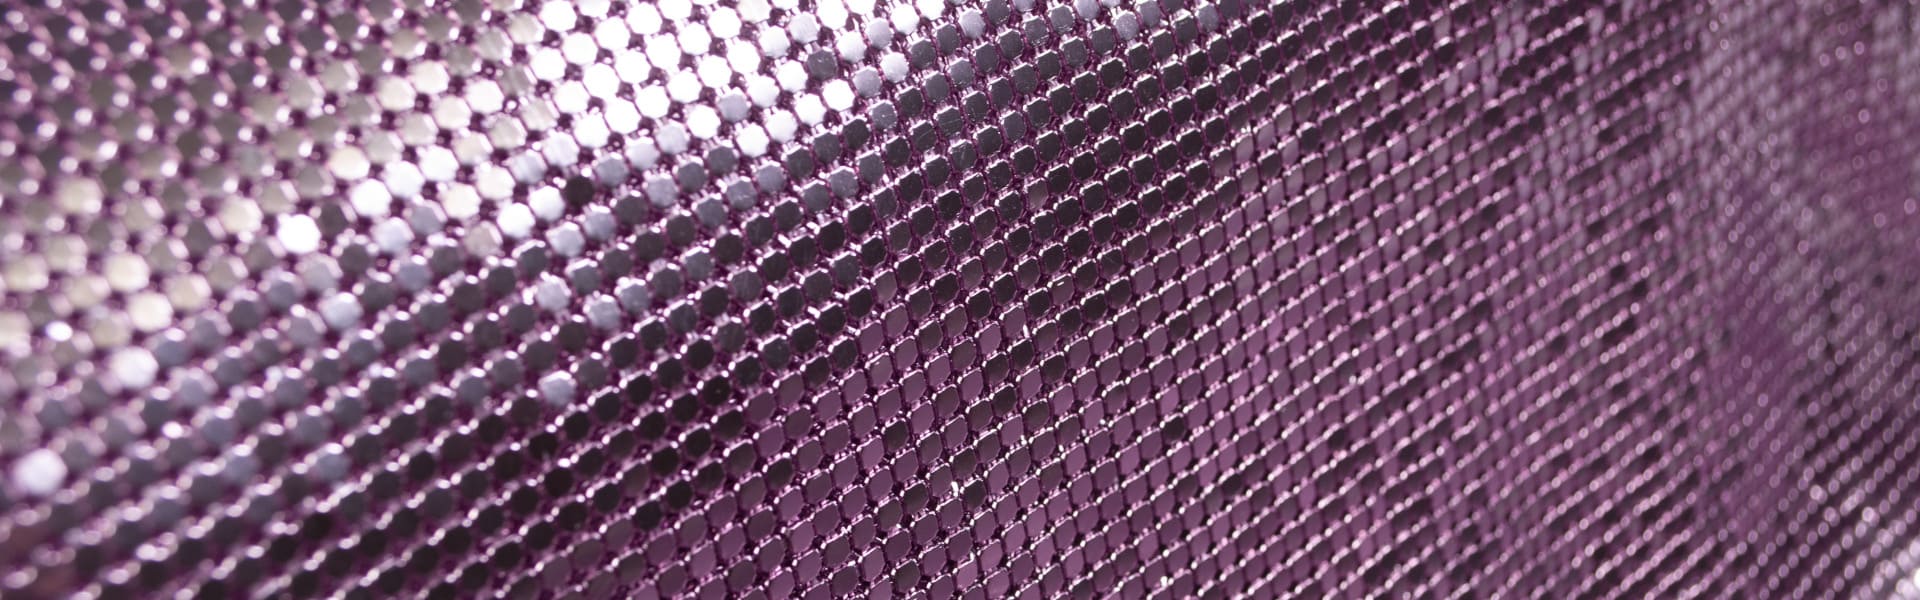 Aluminium metal mesh